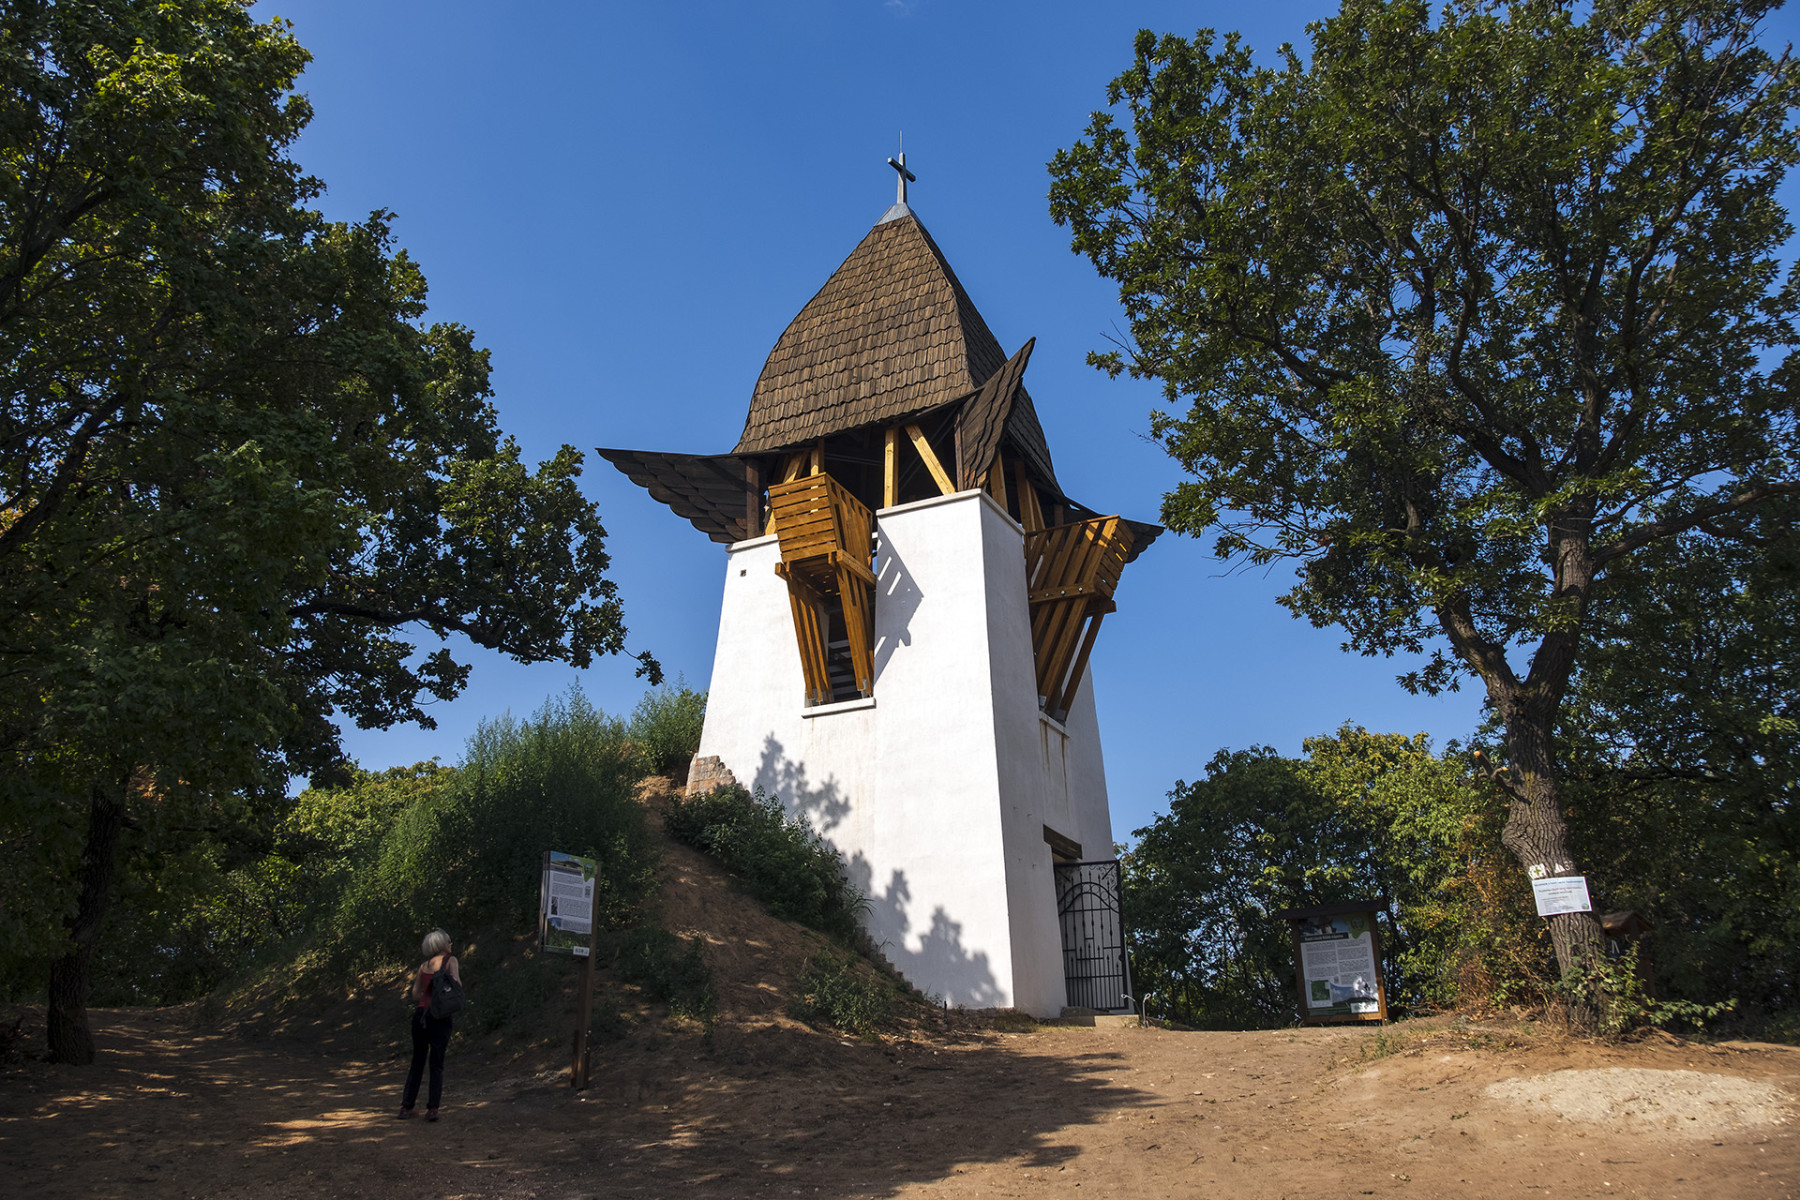 Szent László kápolna és kilátó a Gyetyánoson (a Somlyó-hegynél) Mogyoród határában, 2022. augusztus 3-án. A helyszín a 2022-ben összeállított Szent László-tanösvény része.